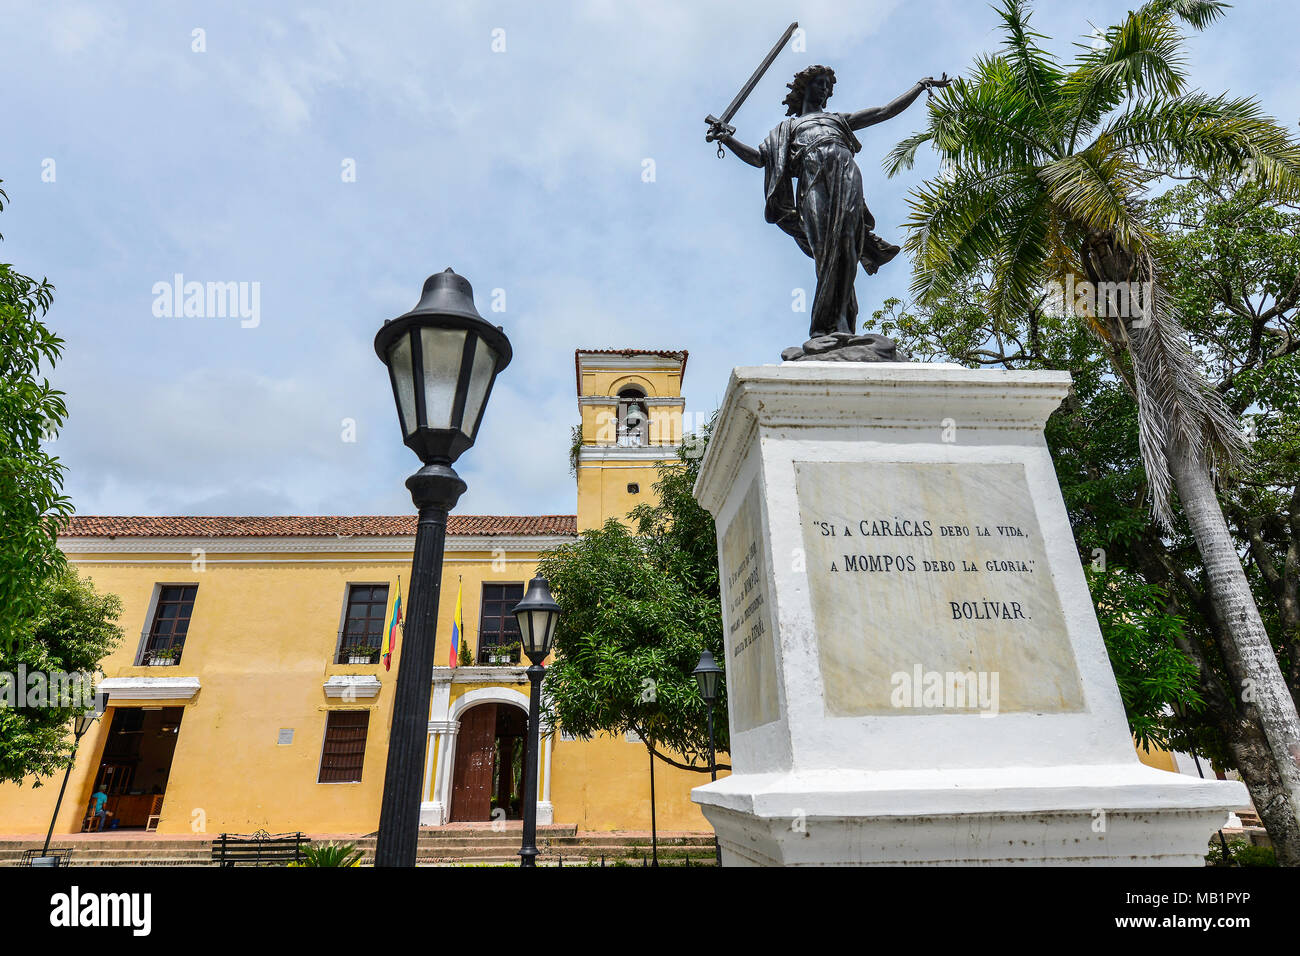 Mompox, Colombia - 8 Agosto 2017: Statua di uno schiavo liberato di fronte al San Carlos Palace in Mompox, Colombia. Foto Stock